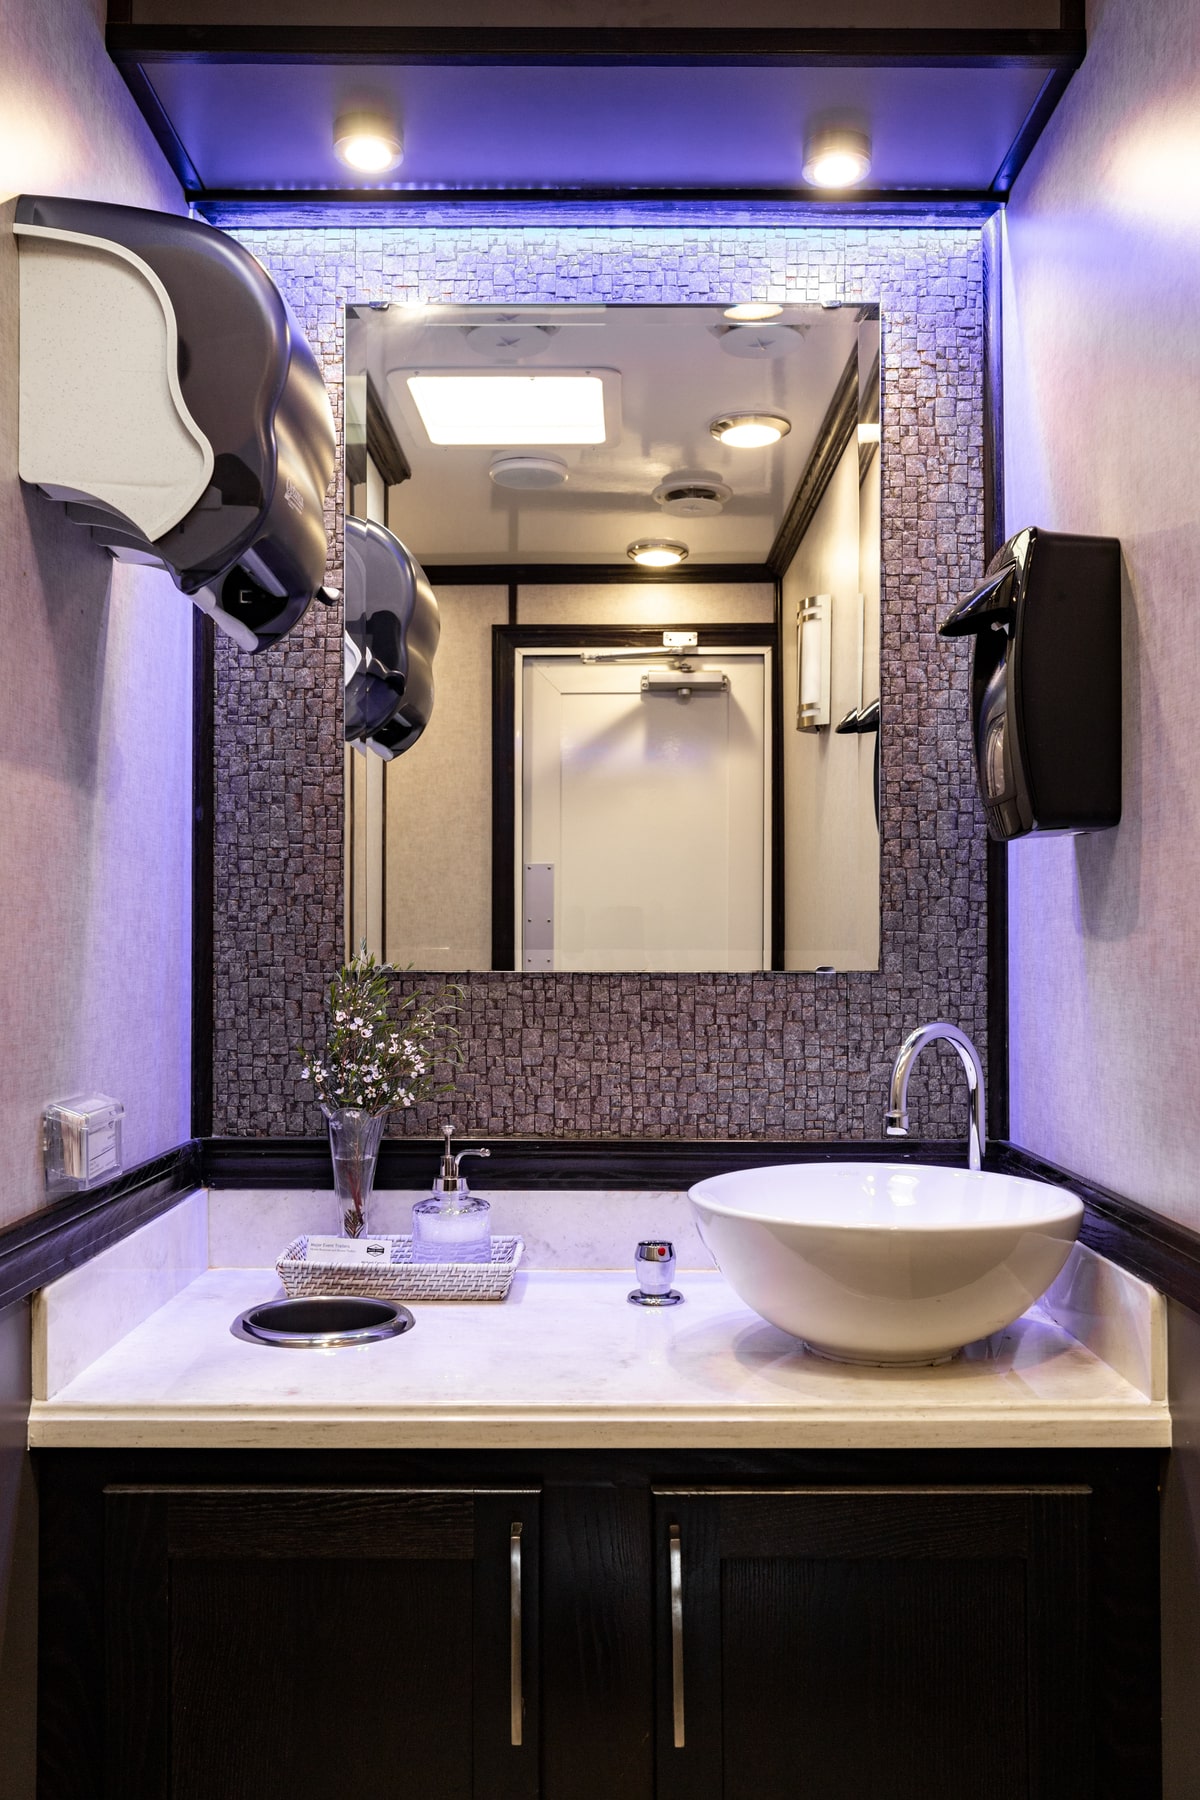 3-Station Luxury Restroom Trailer Rental – Interior View 7